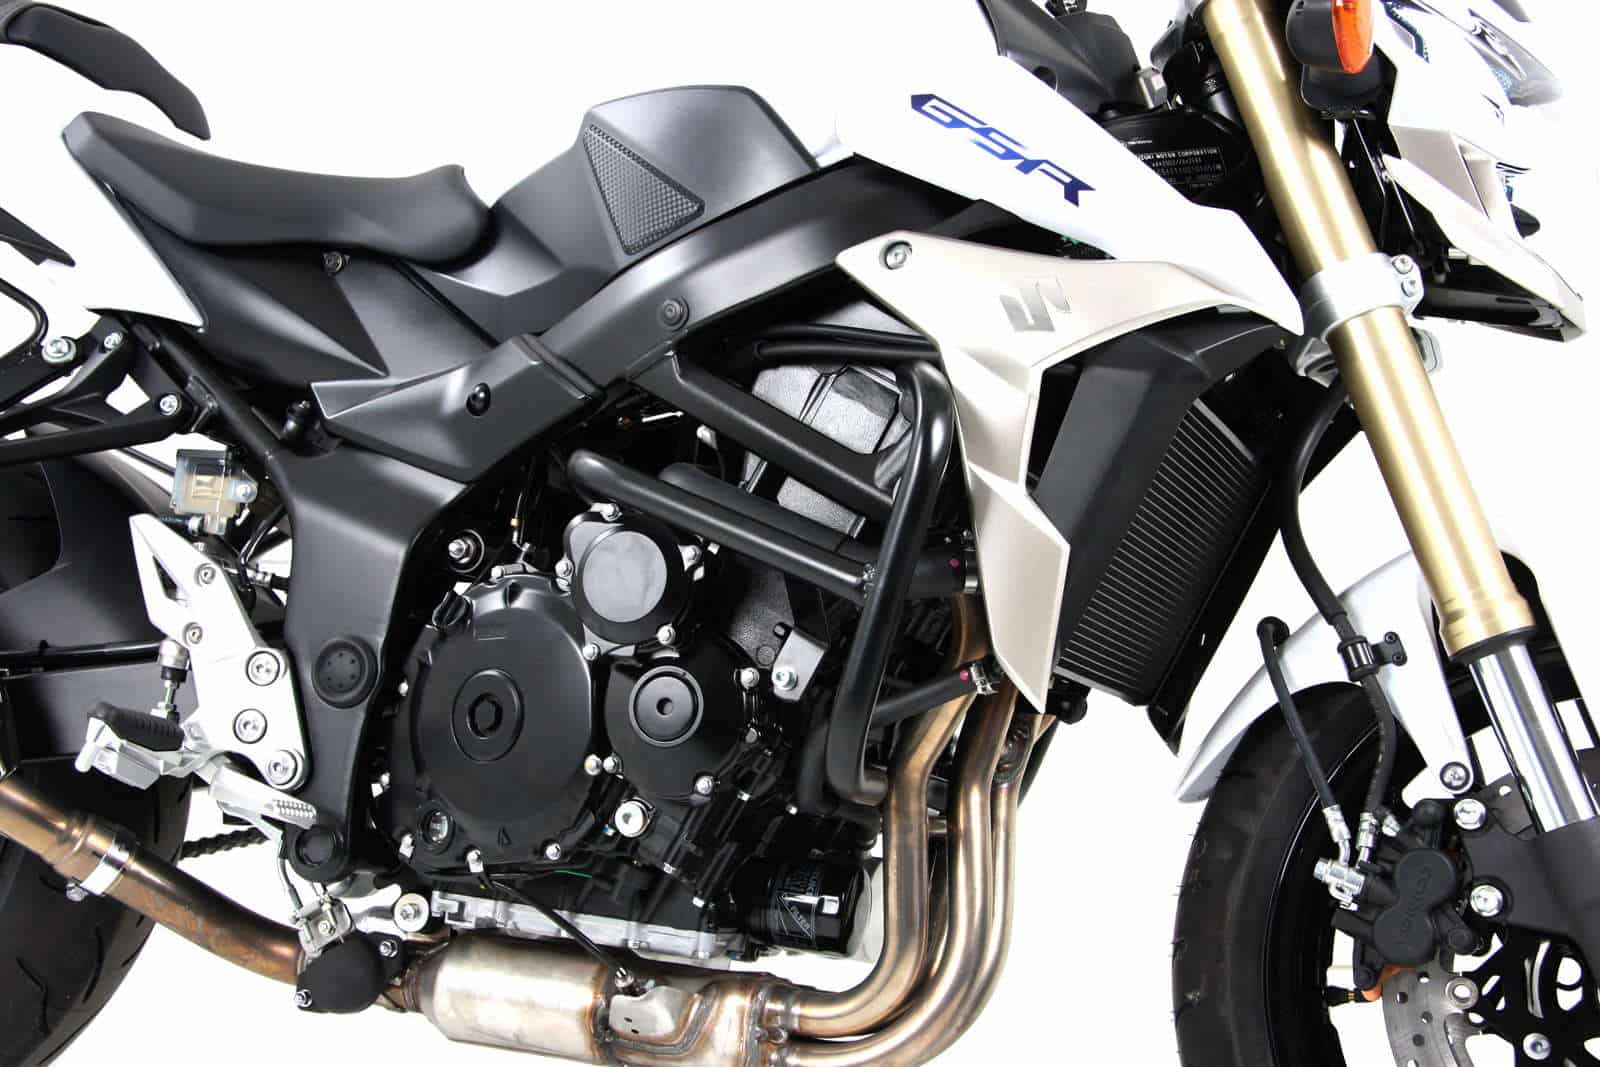 Engine protection bar black for Suzuki GSR 750 (2011-2016)